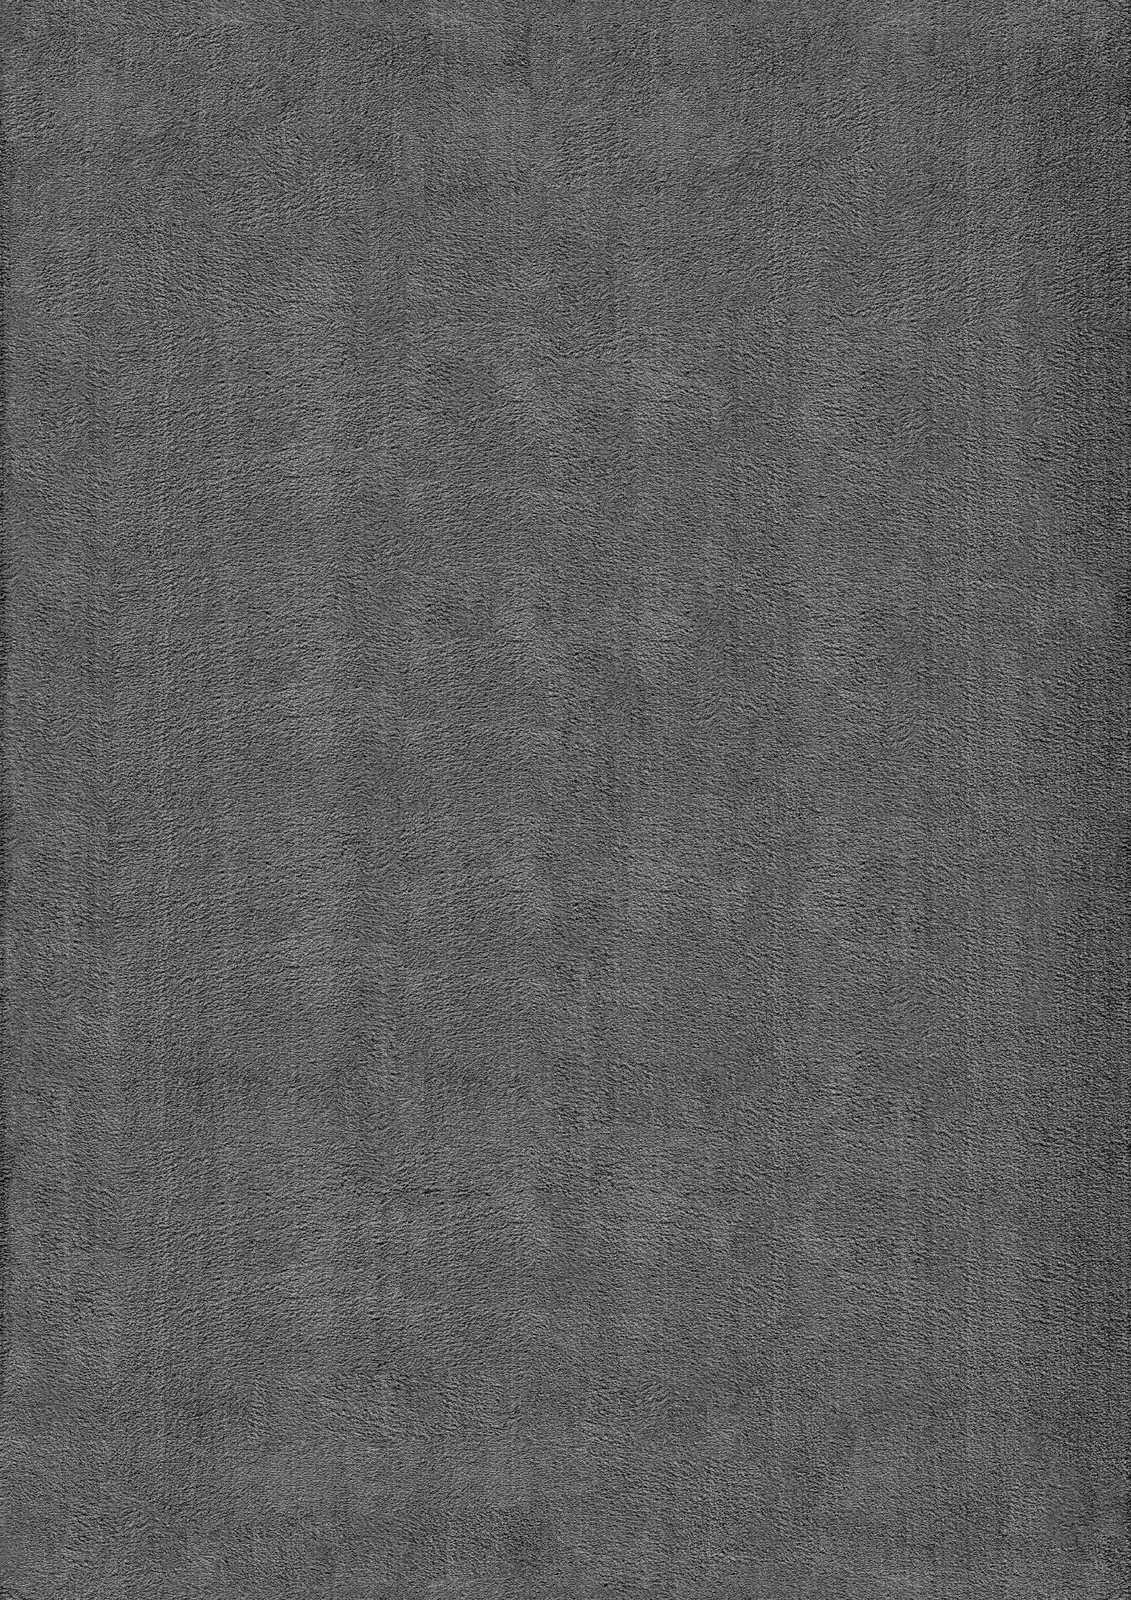             Pluizig hoogpolig tapijt in antraciet - 110 x 60 cm
        